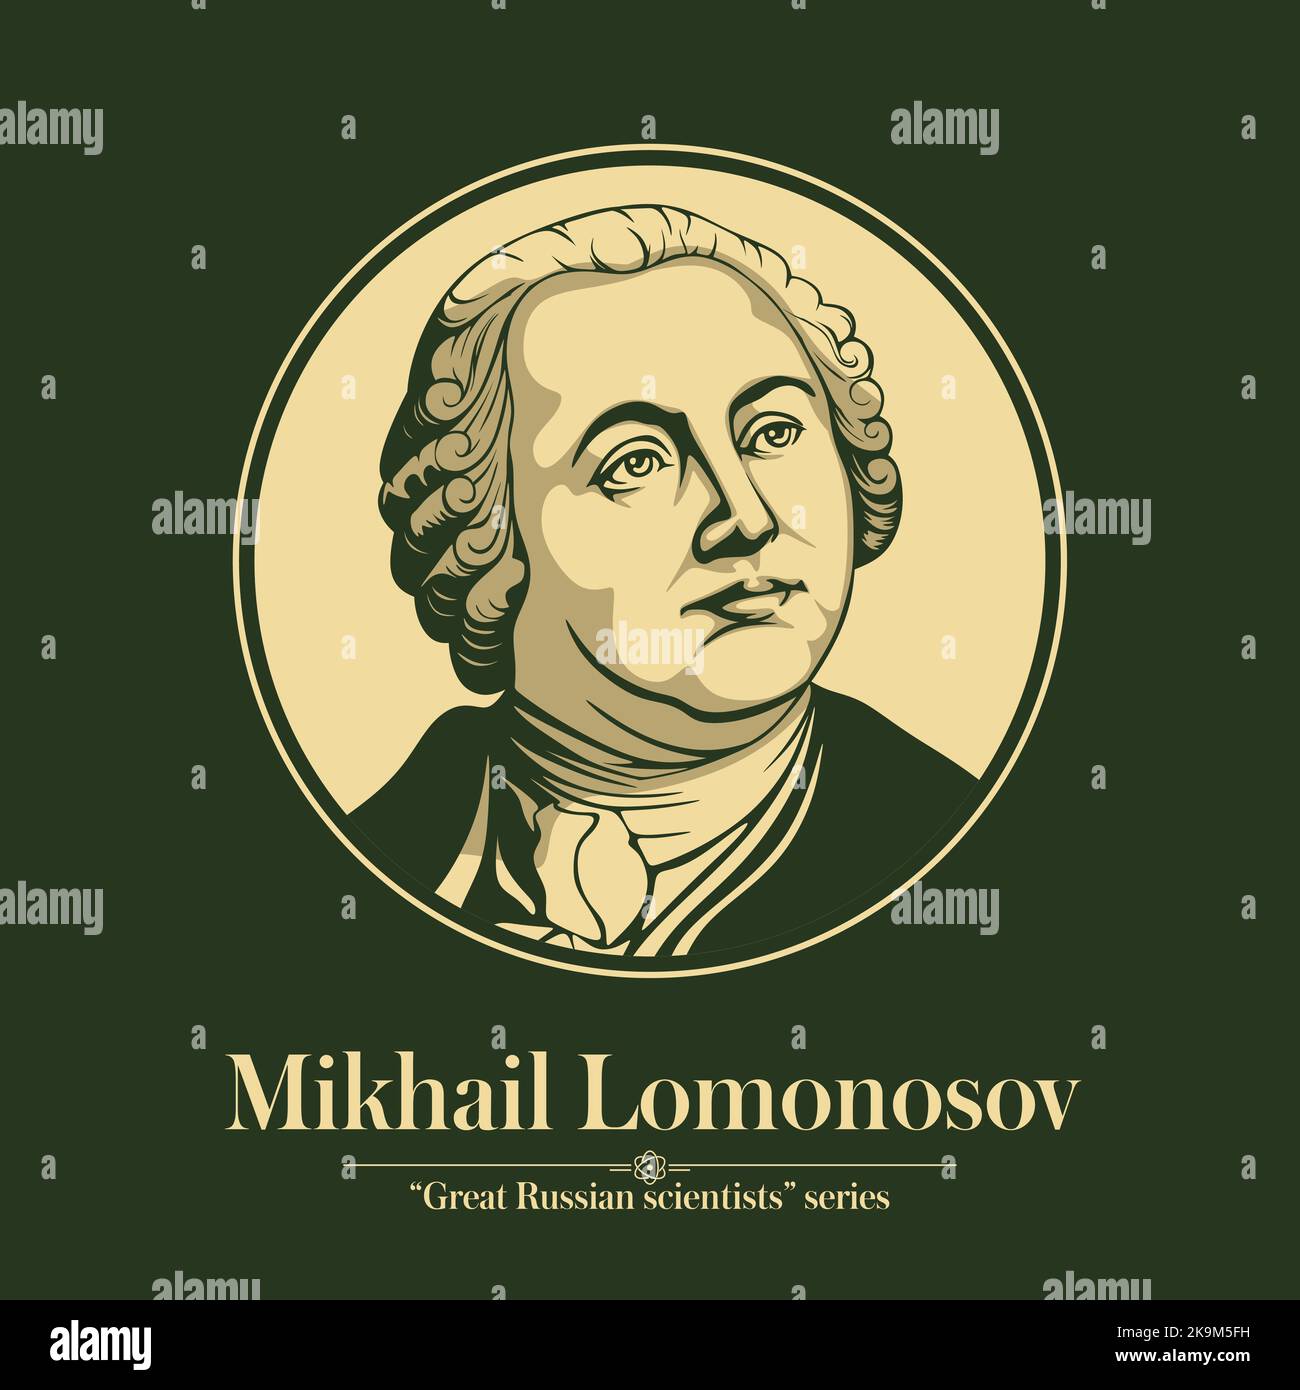 La série des grands scientifiques russes. Mikhail Lomonosov était un polymath, scientifique et écrivain russe, qui a apporté d'importantes contributions à la littérature Illustration de Vecteur